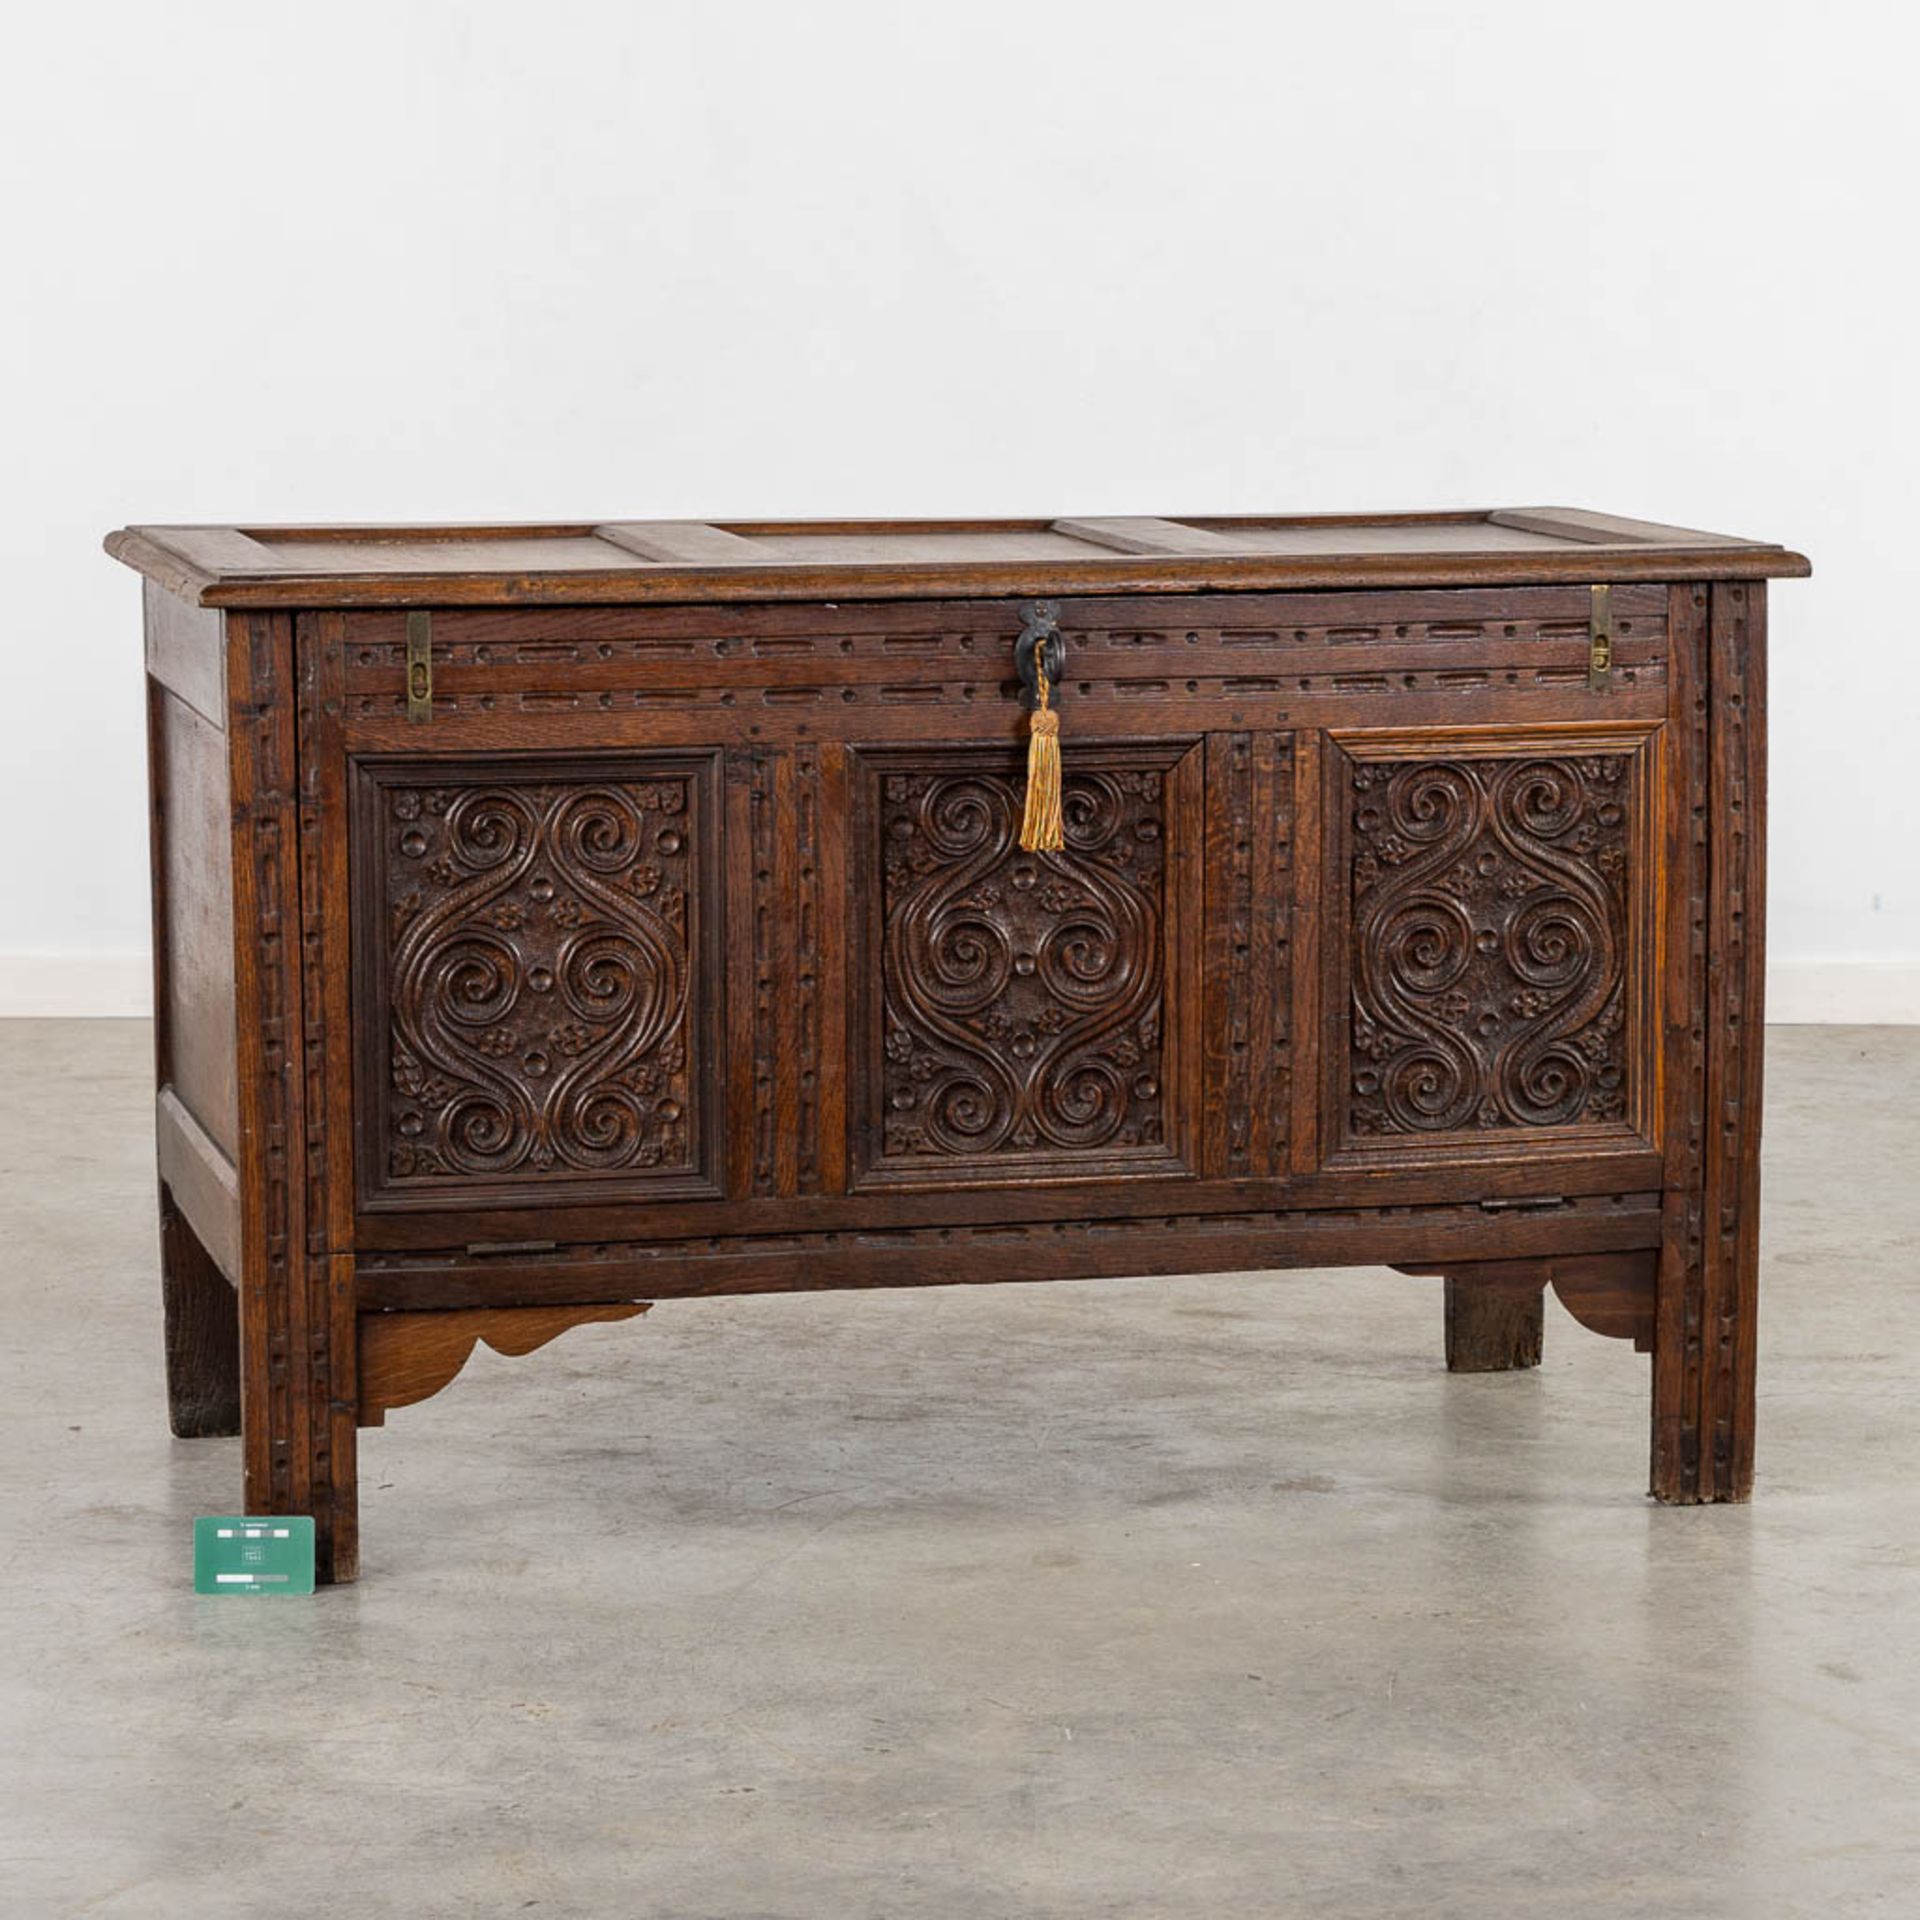 A chest with wood-sculptured panels. 19th C. (L:56 x W:120 x H:72 cm) - Bild 2 aus 11